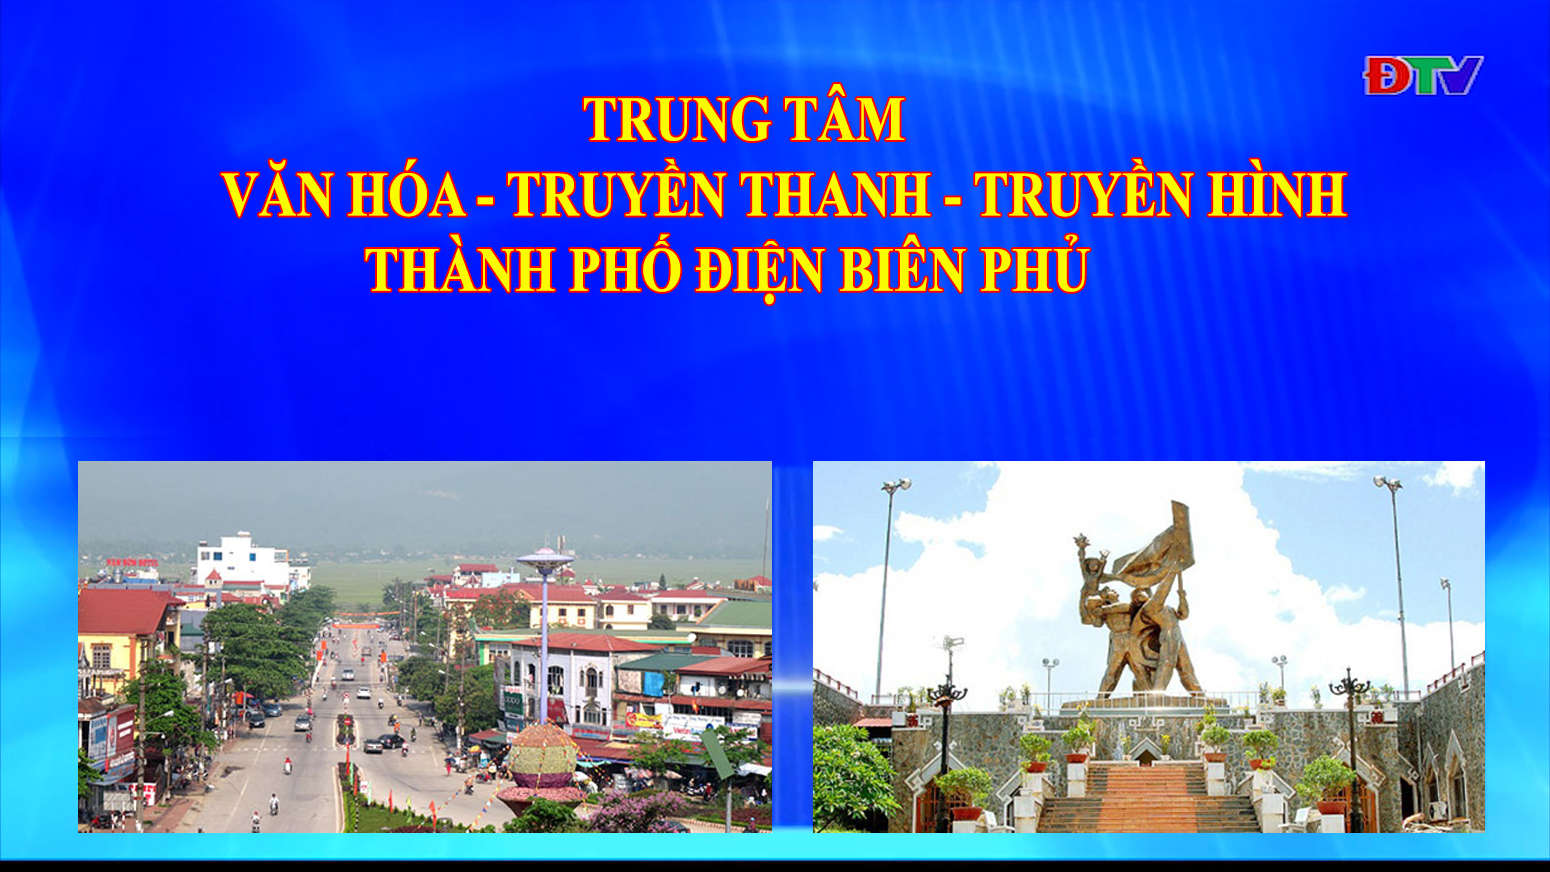 Trung tâm VH-TTTH thành phố Điện Biên Phủ (Ngày 14-12-2021)